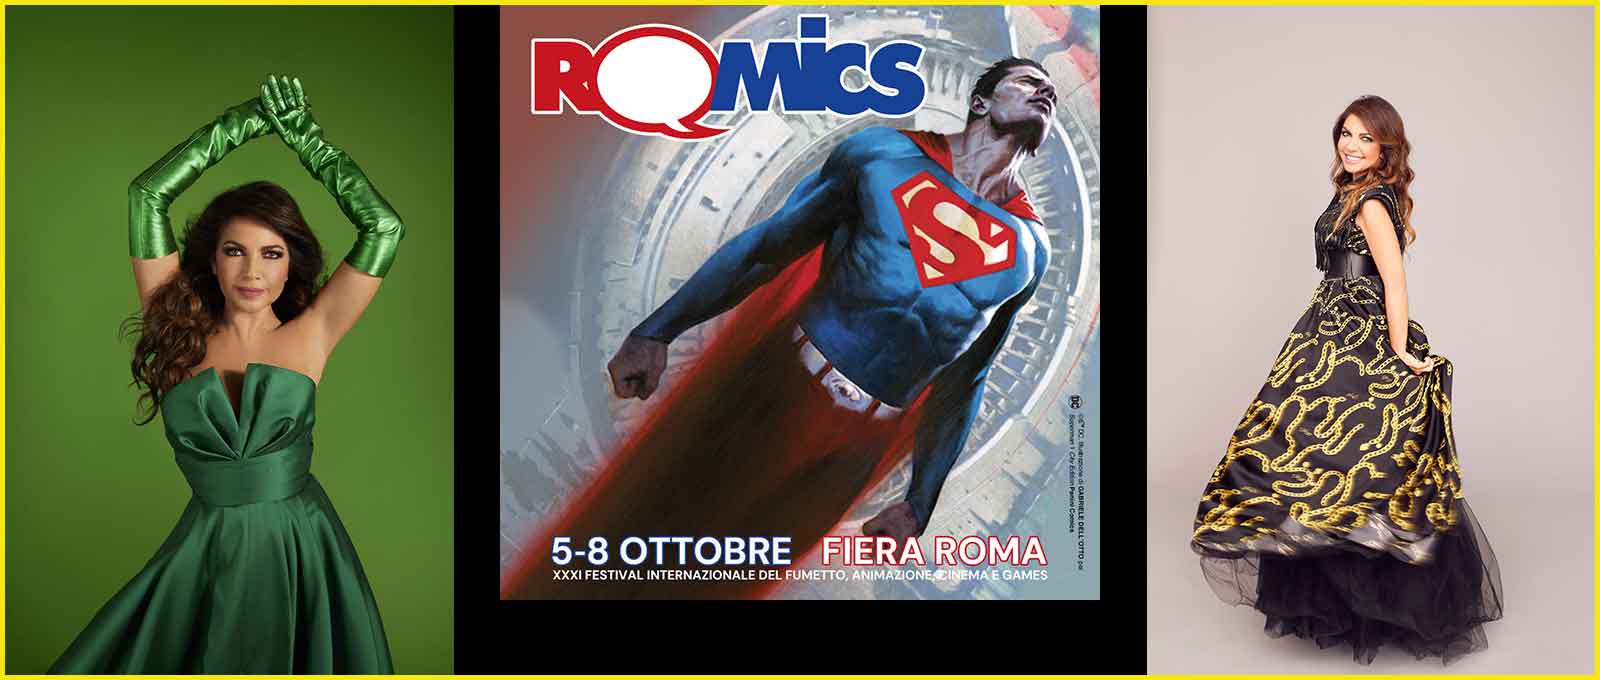 Festival Intenazionale del fumetto “Romics”,